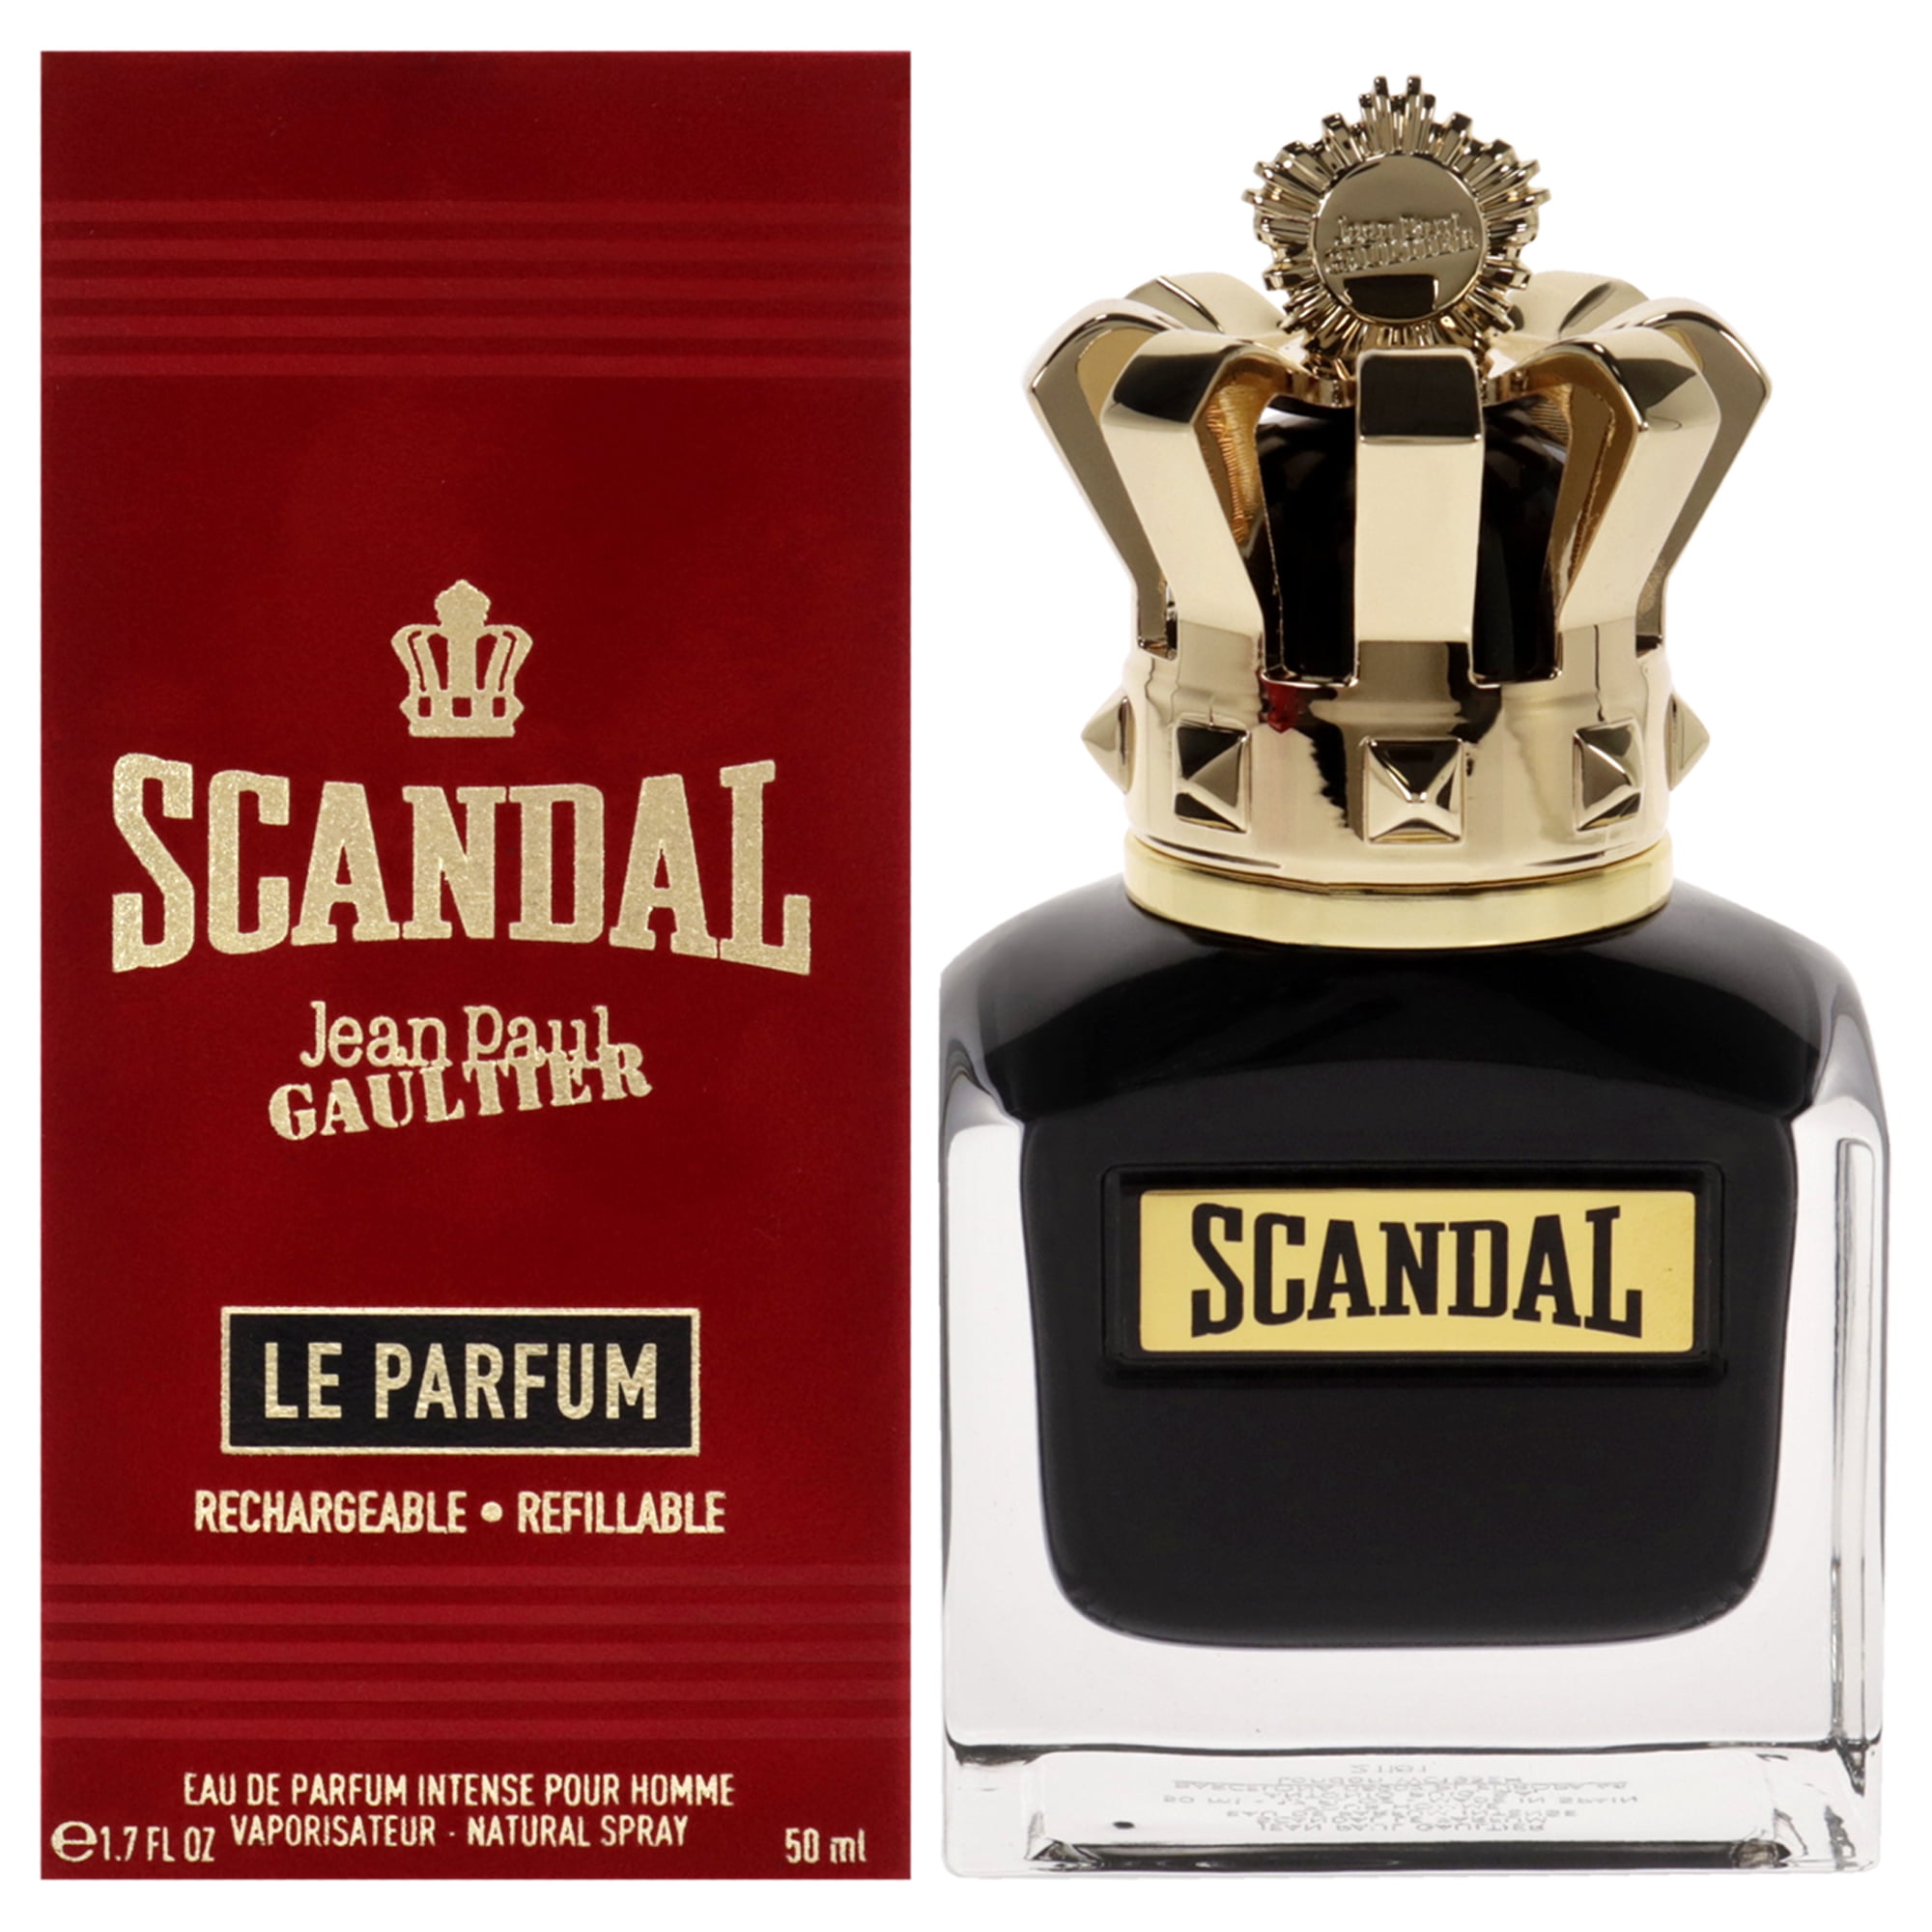 Jean Paul Gaultier Scandal Le Parfum Pour Homme - Eau de Parfum